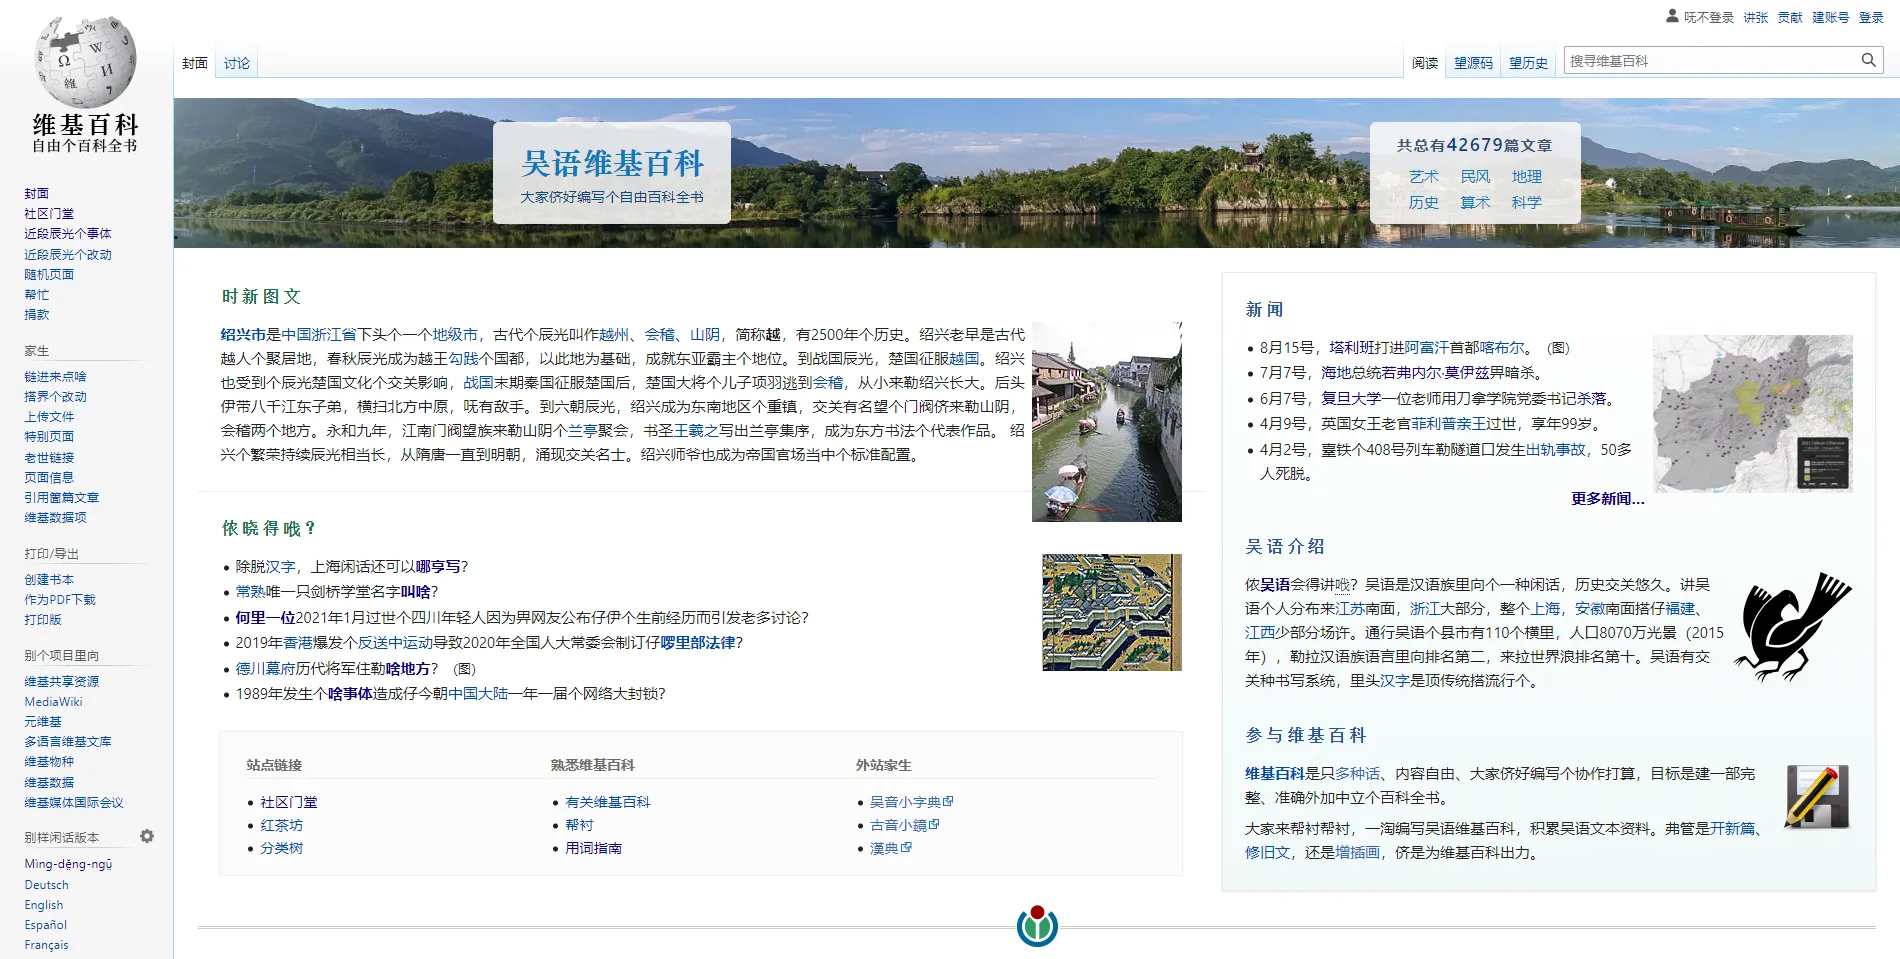 Chinese language - Wikipedia